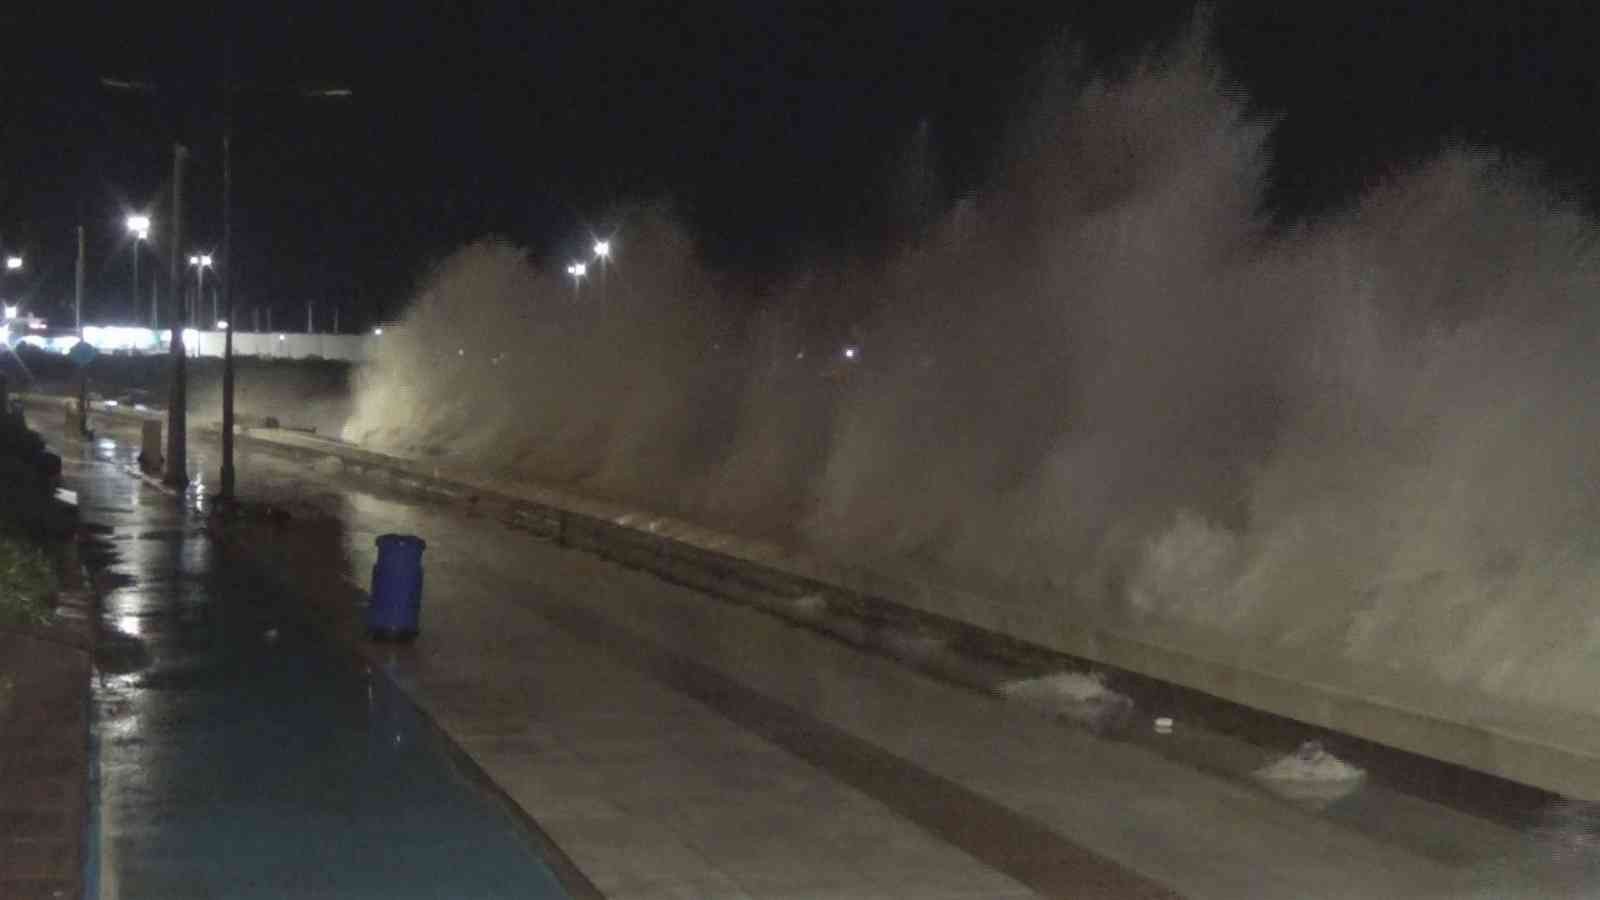 İzmir’de fırtına nedeniyle deniz taştı #izmir